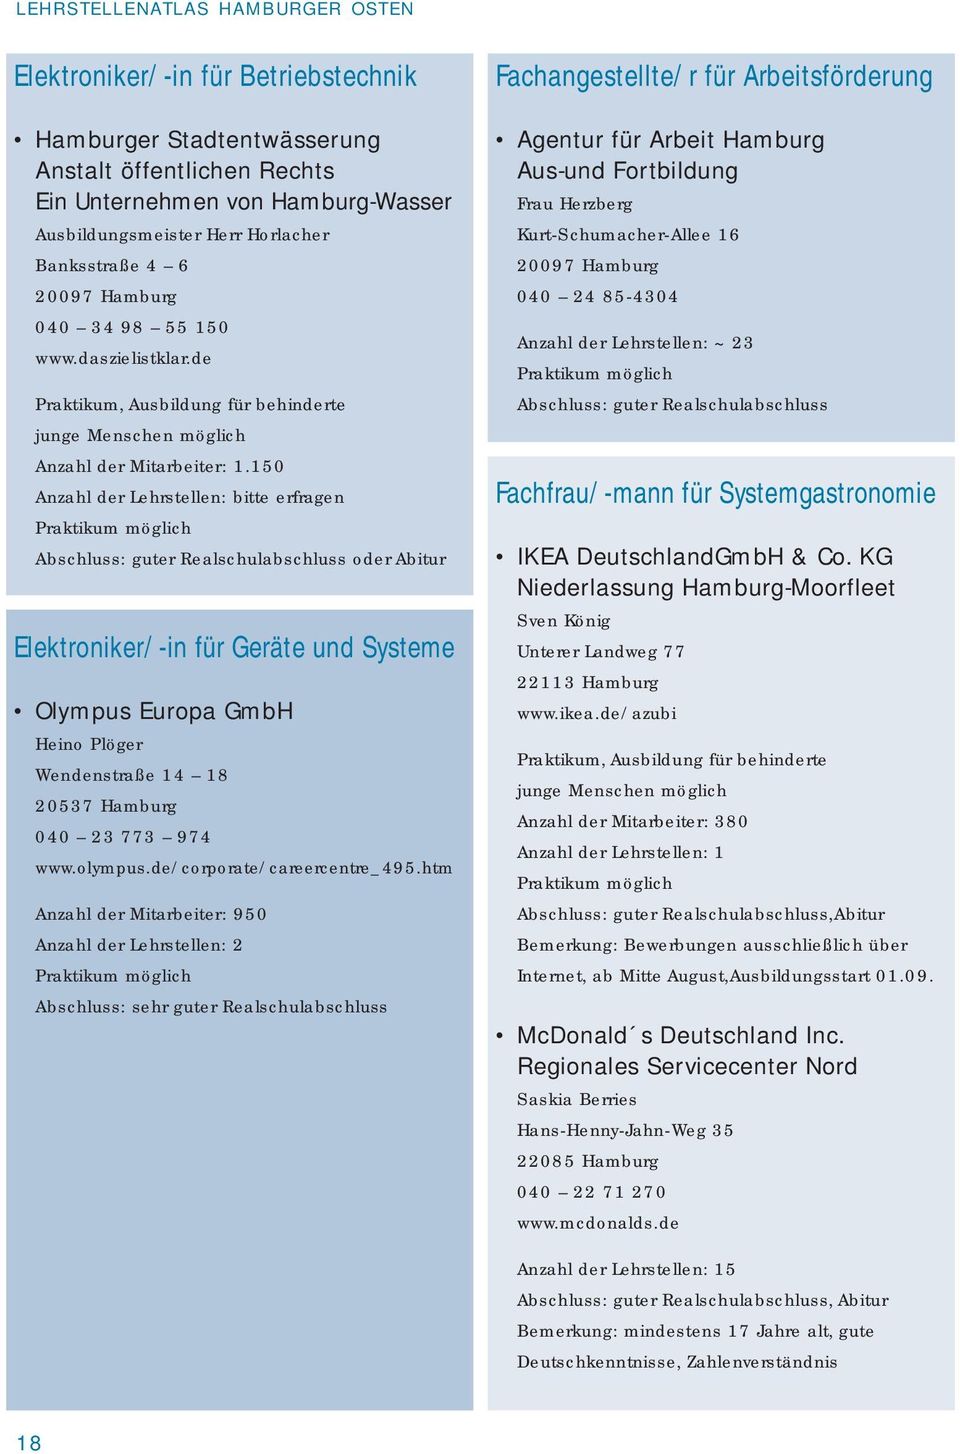 150 Abschluss: guter Realschulabschluss oder Abitur Elektroniker/-in für Geräte und Systeme Olympus Europa GmbH Heino Plöger Wendenstraße 14 18 20537 Hamburg 040 23 773 974 www.olympus.